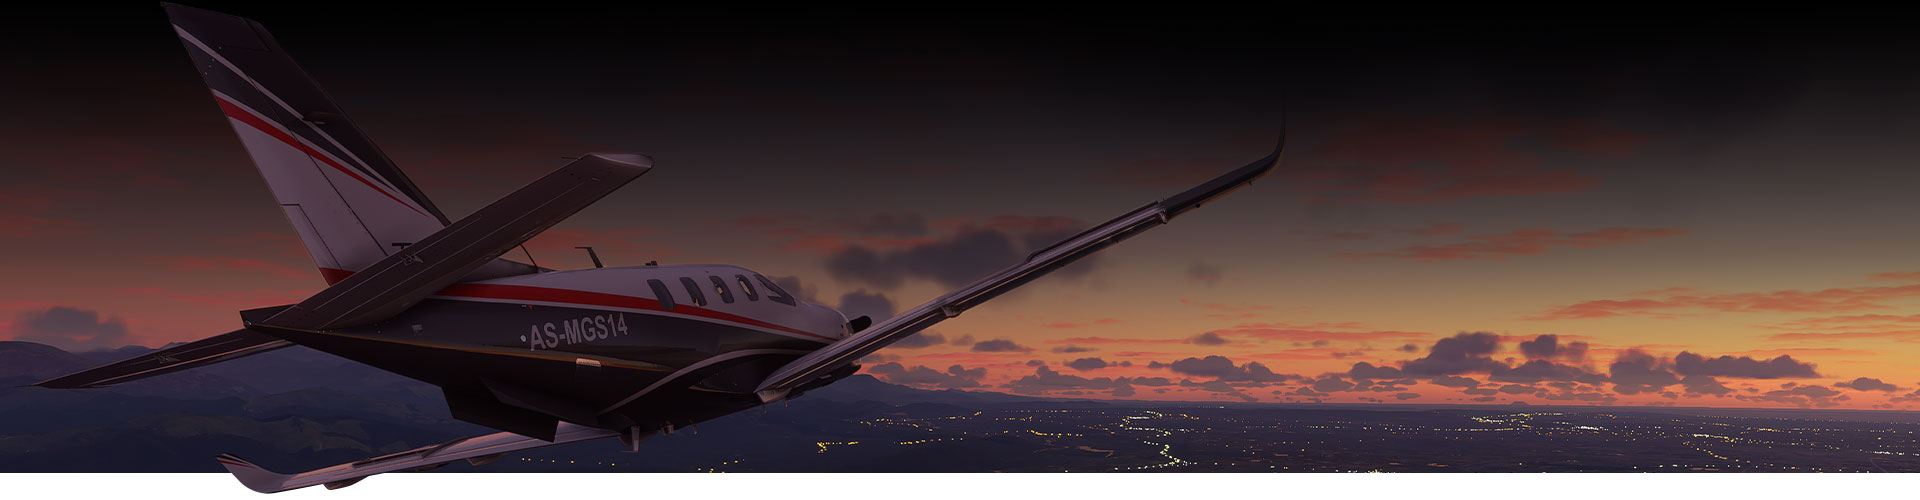 Avião do Microsoft Flight Simulator a sobrevoar uma cidade ao pôr-do-sol